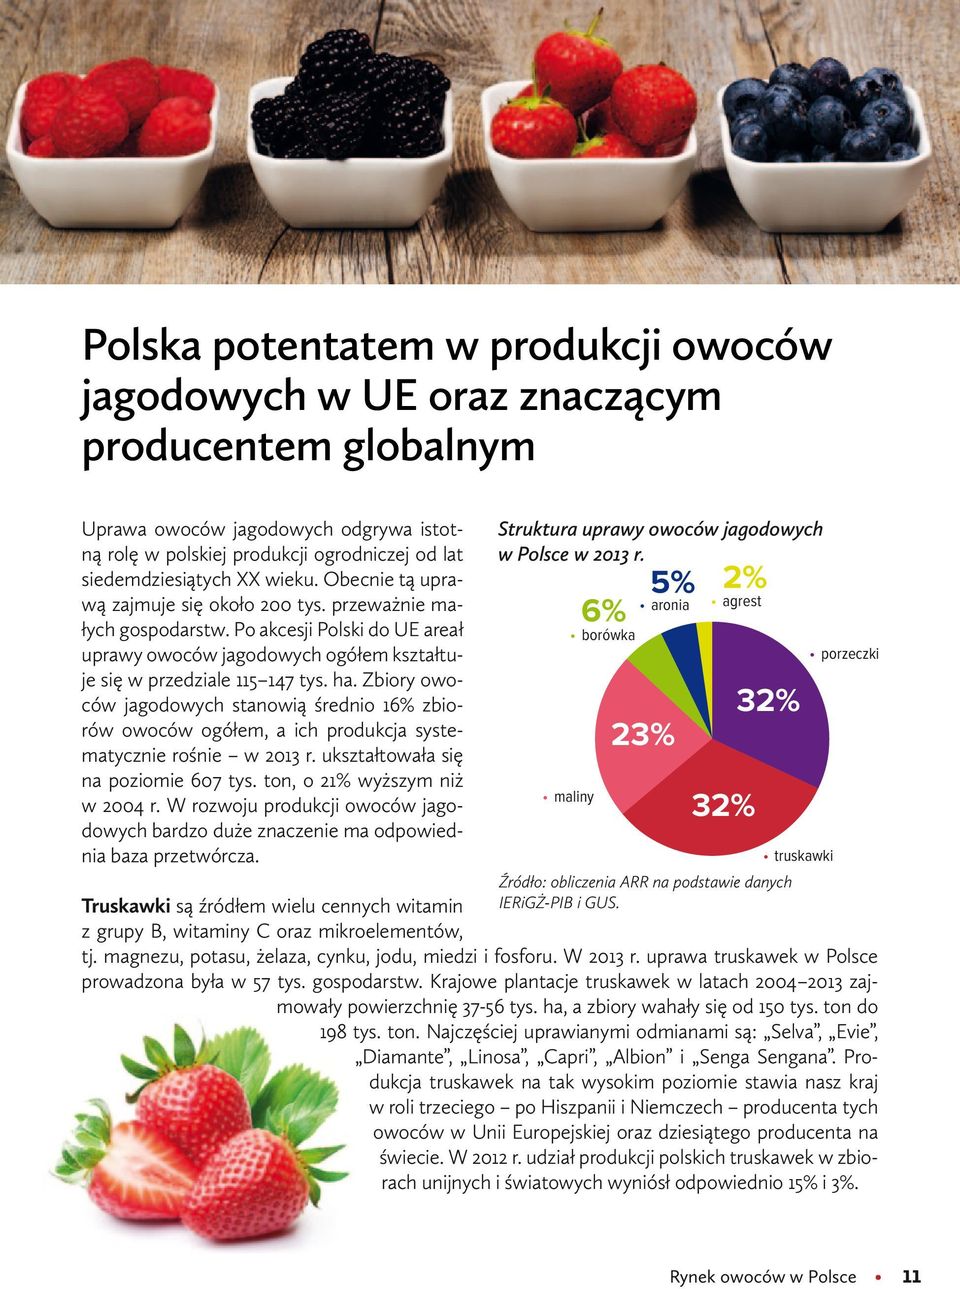 Zbiory owoców jagodowych stanowią średnio 16% zbiorów owoców ogółem, a ich produkcja systematycznie rośnie w 2013 r. ukształtowała się na poziomie 607 tys. ton, o 21% wyższym niż w 2004 r.